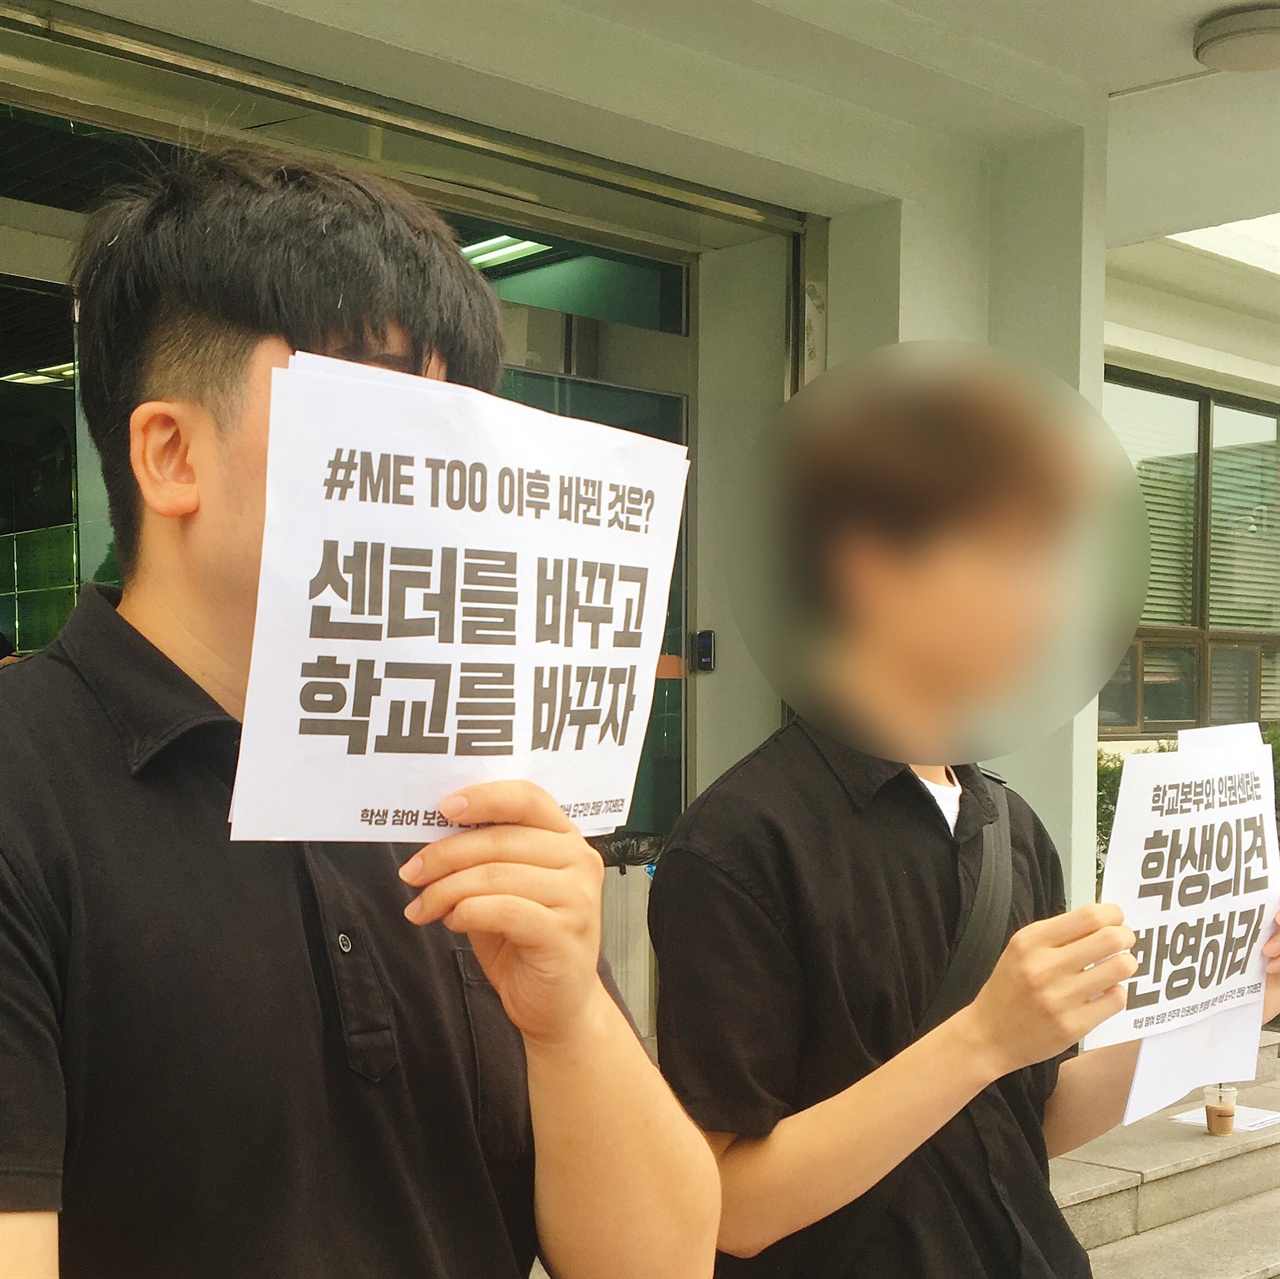 동국대학교에서 지난 8월 30일, 인권센터의 폐쇄성을 지적하며 학생 요구안을 발표, 전달했다.